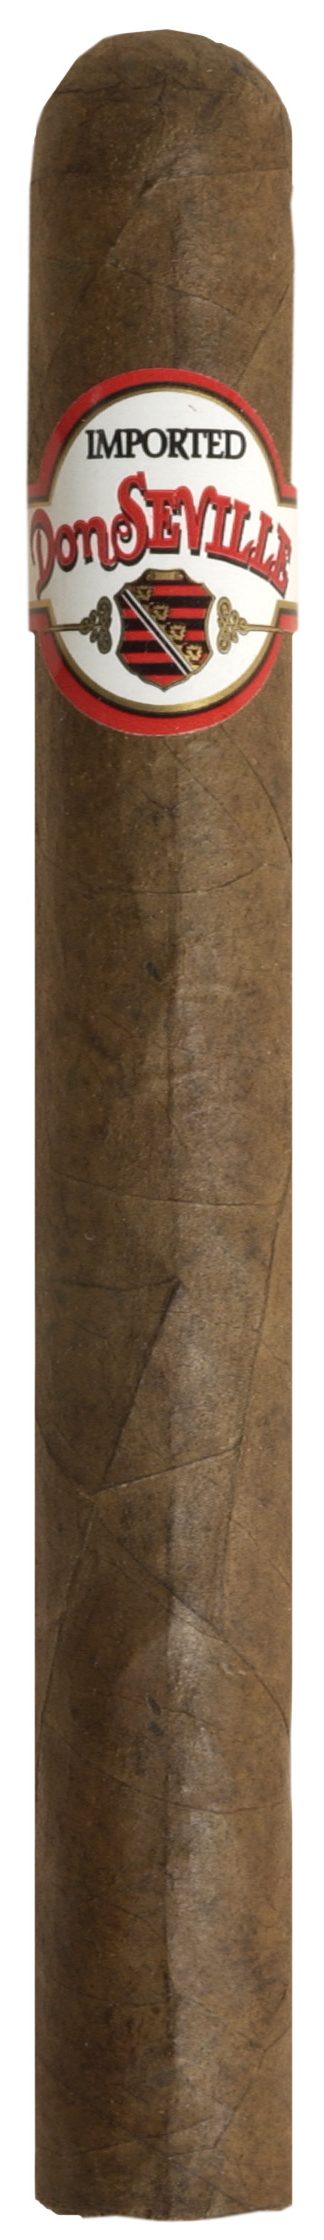 don seville valencia single cigar